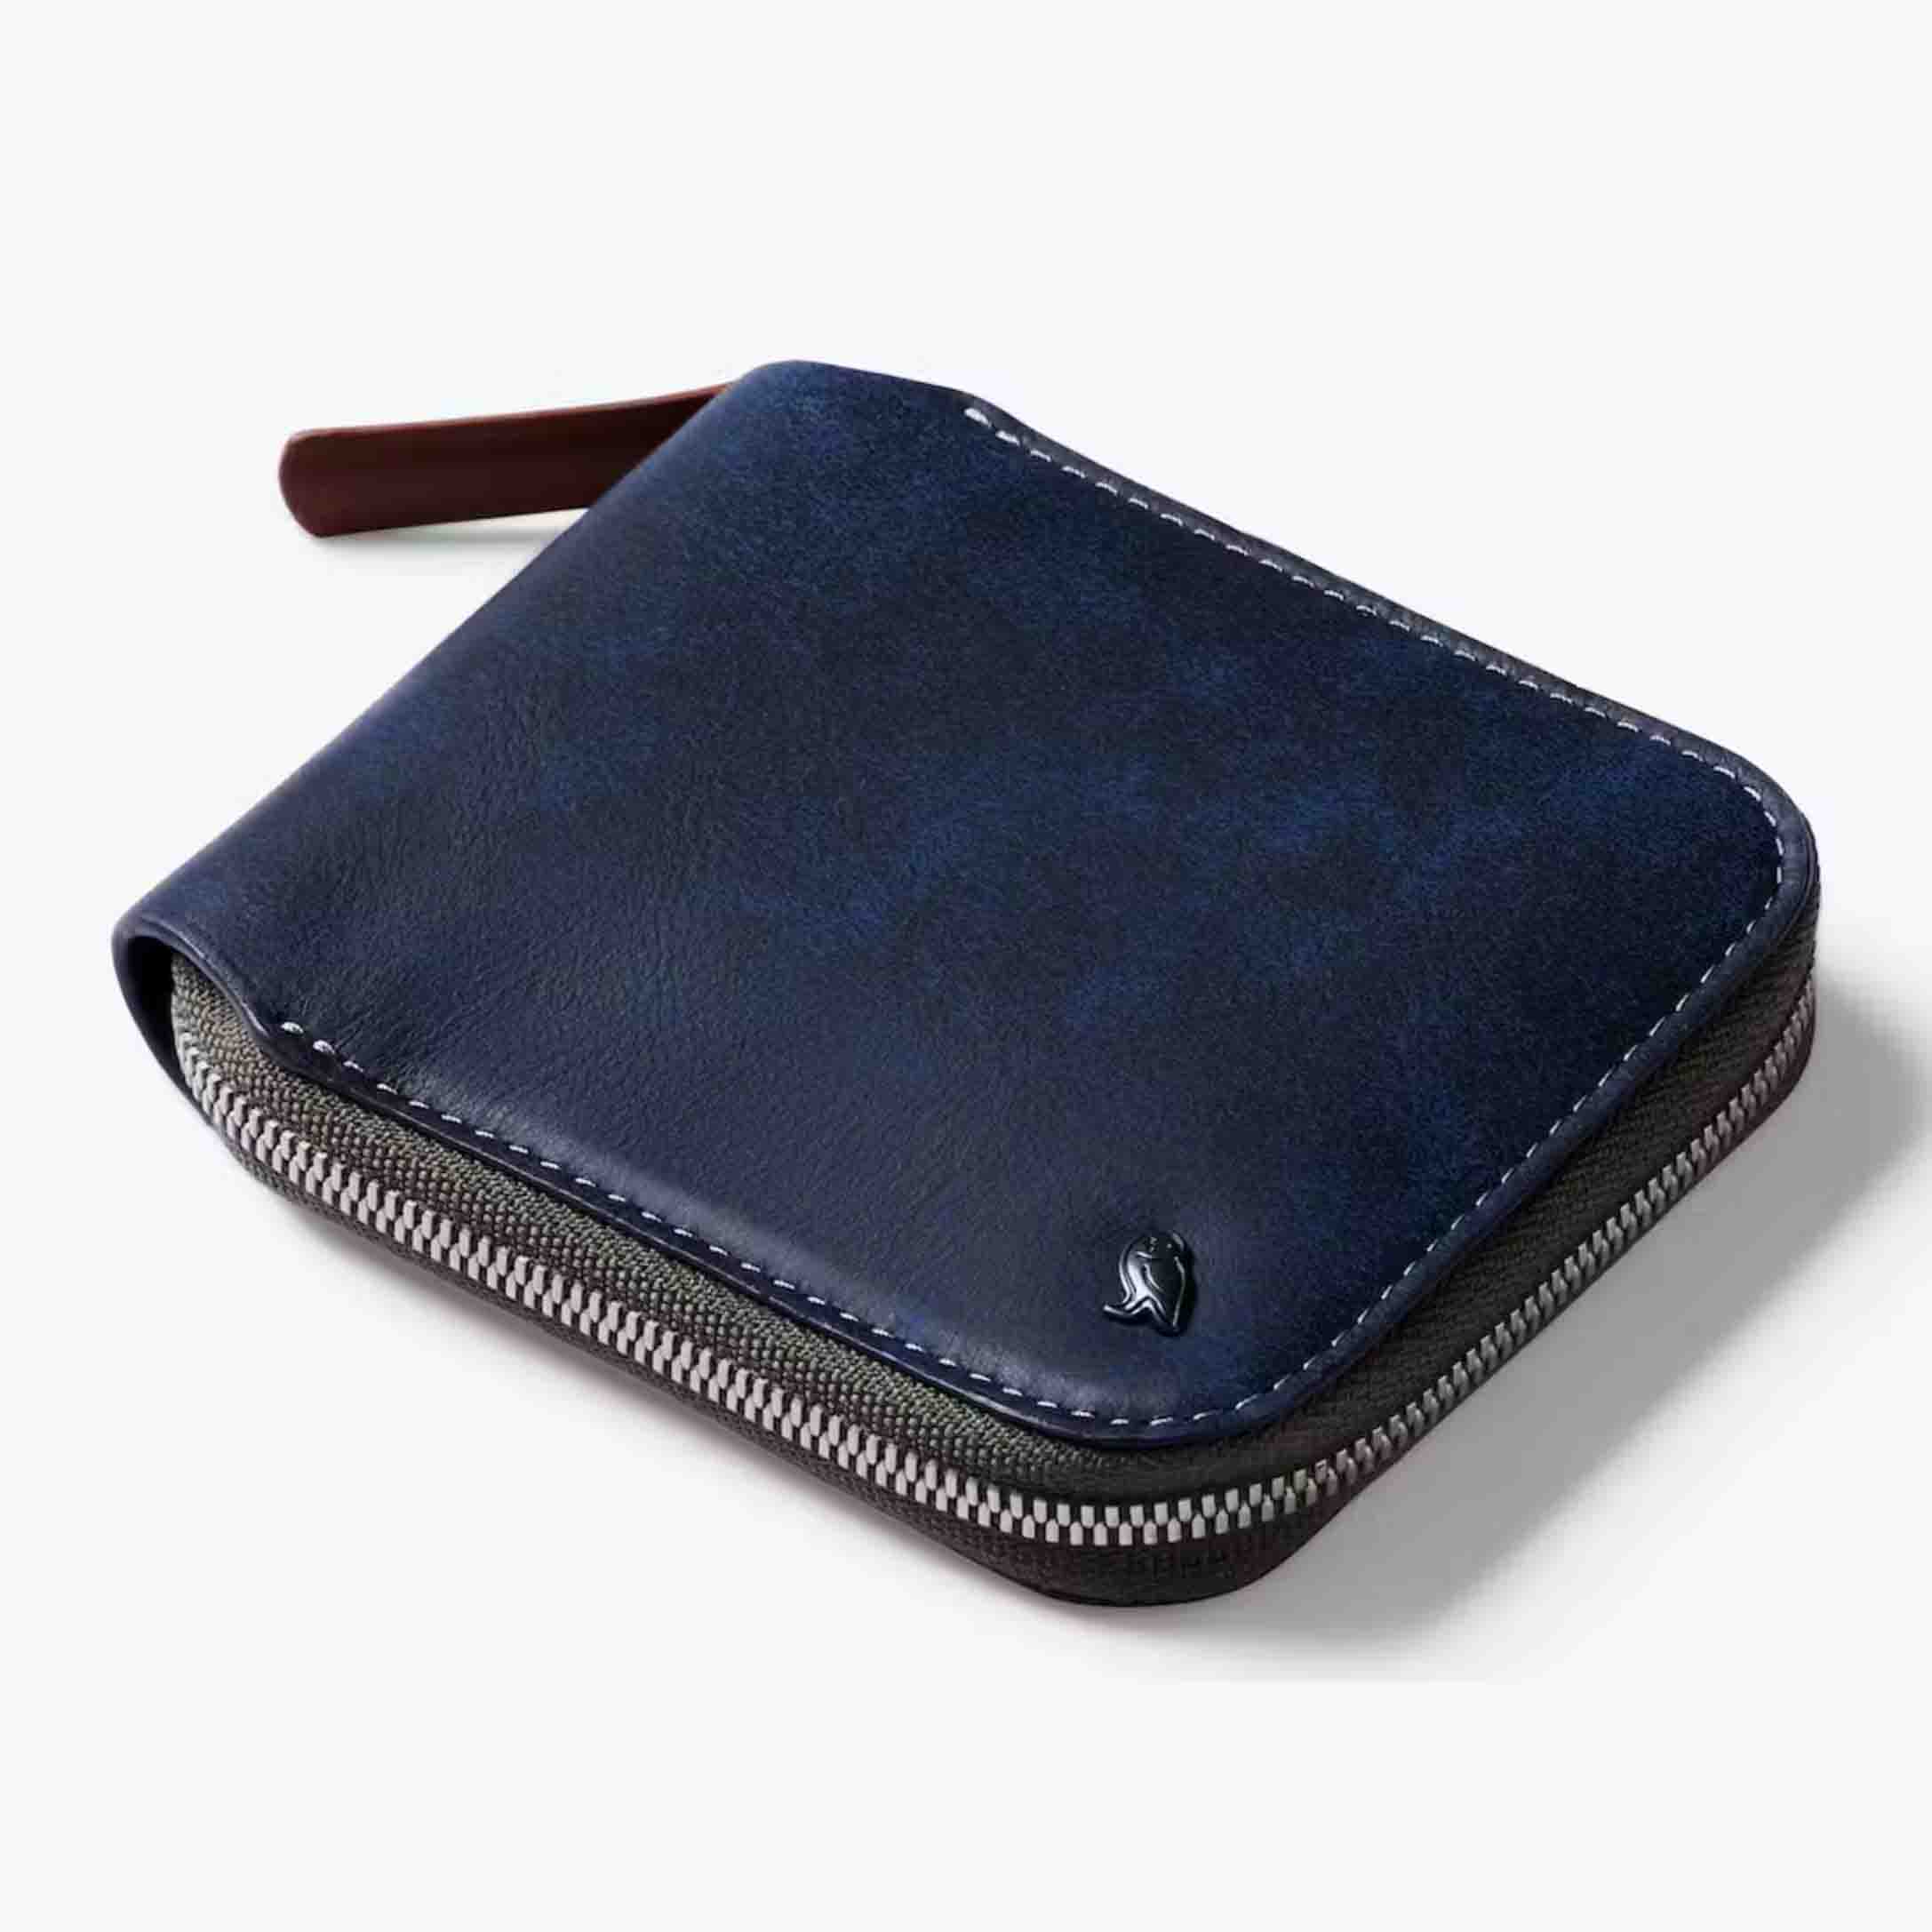 Bellroy Zip Wallet in navy blue with zip